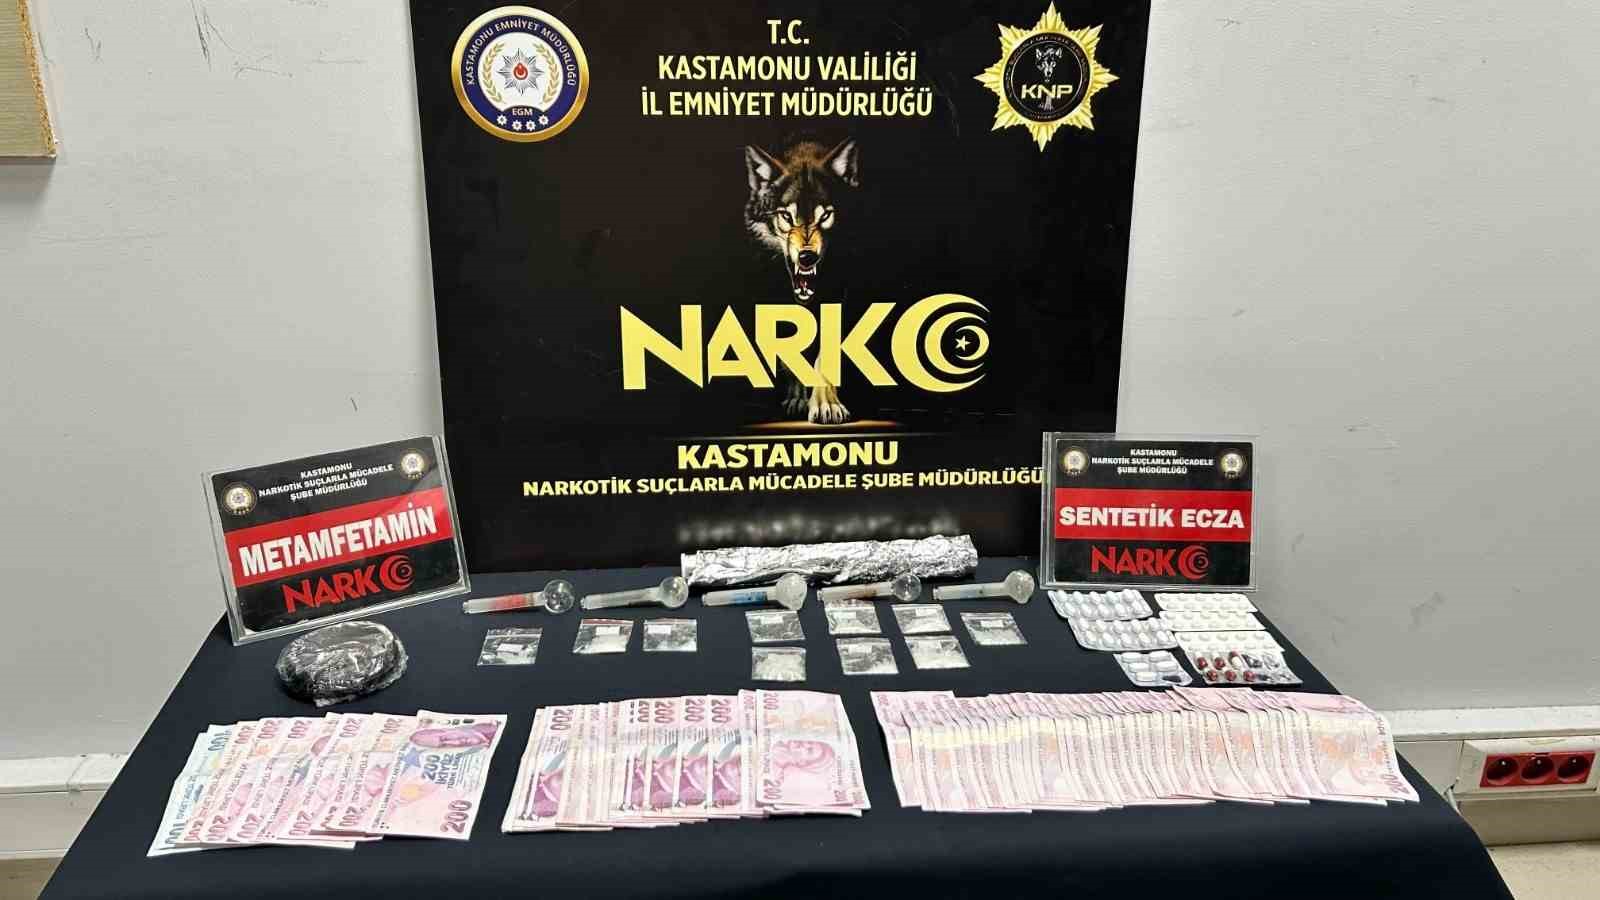 Kastamonu’da uyuşturucu ile yakalanan 1’i kadın 3 kişi tutuklandı
